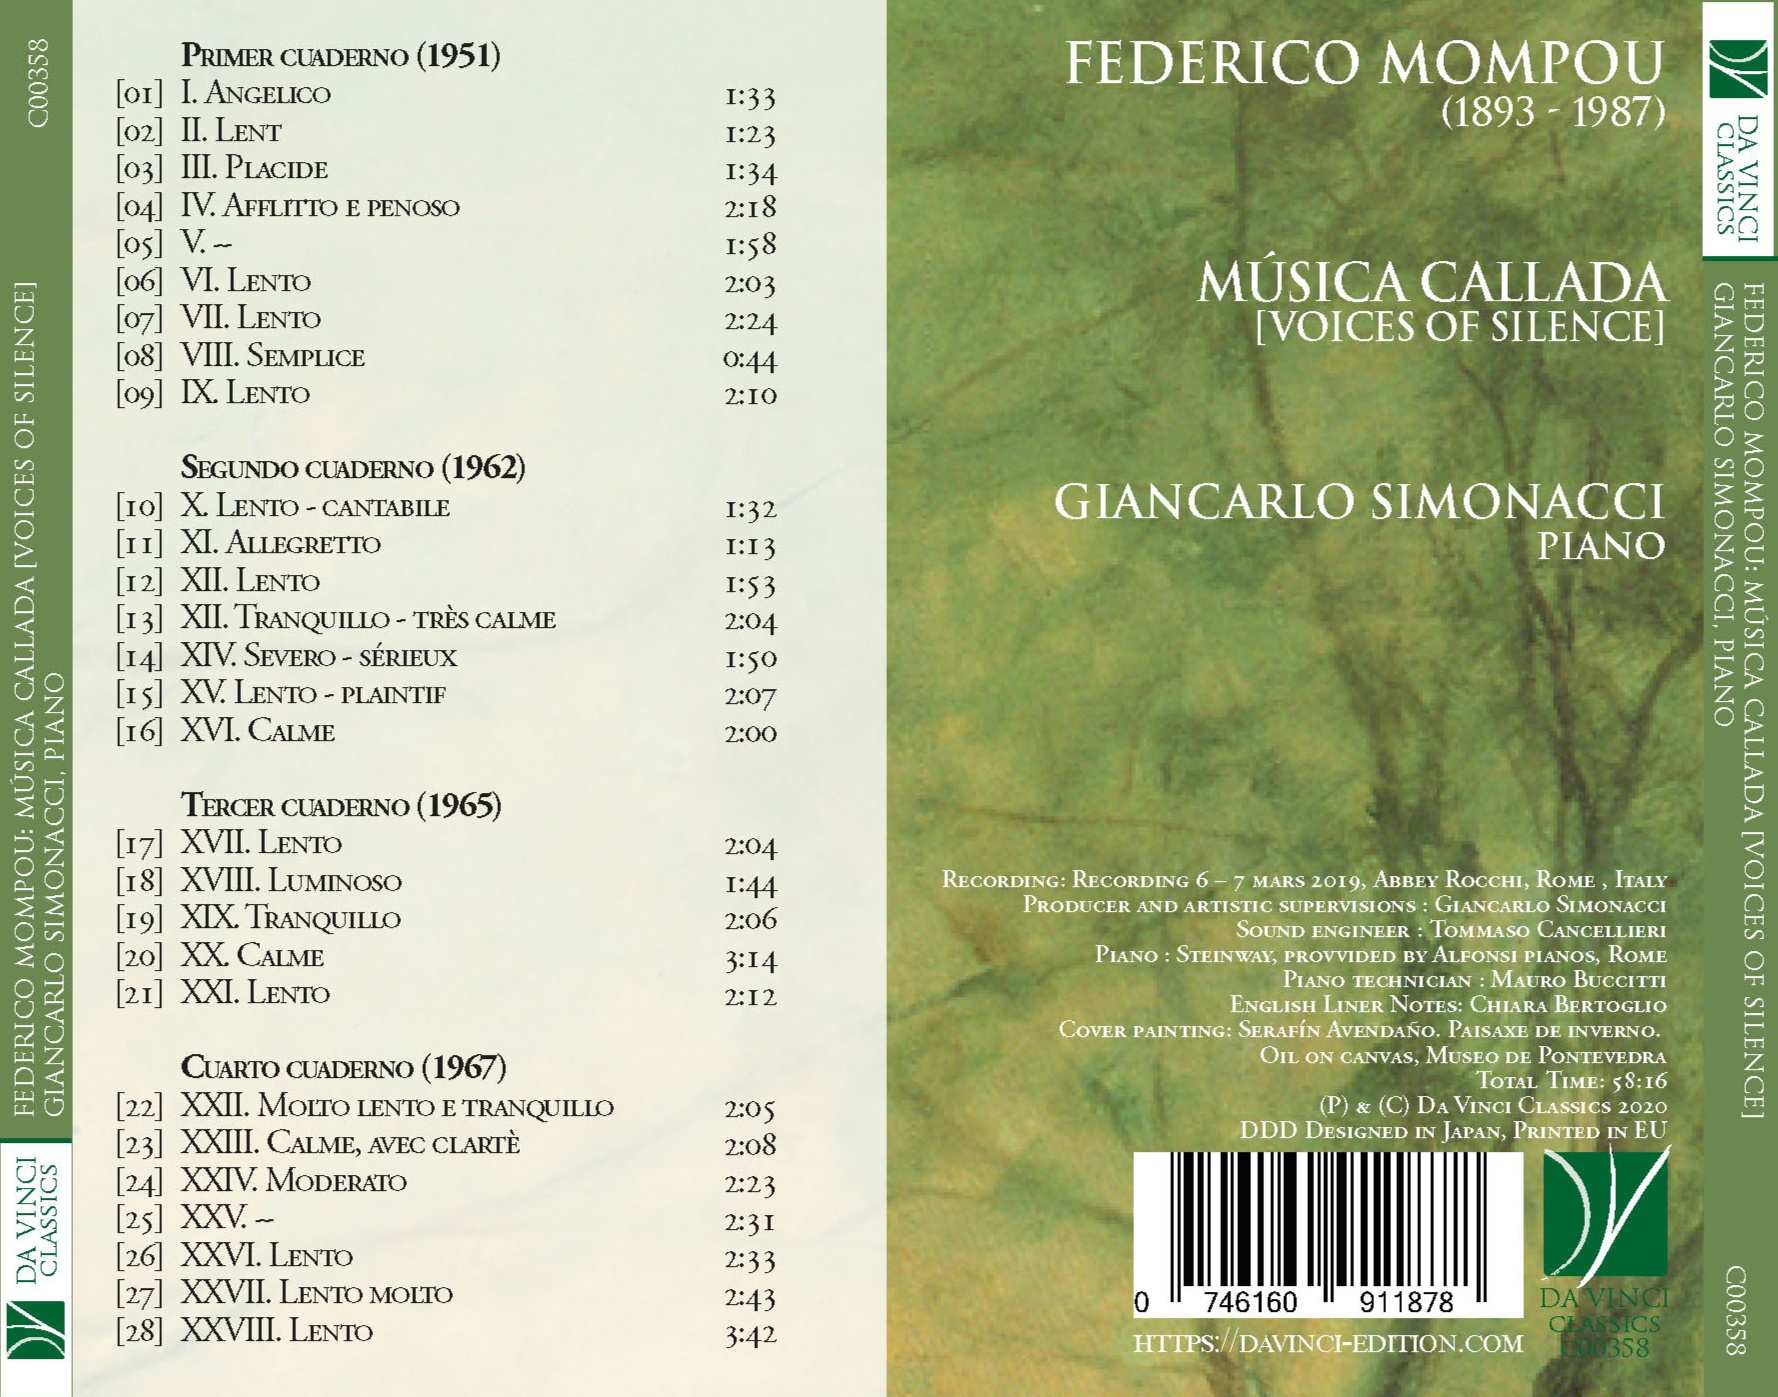 Federico Mompou: Mùsica Callada (Voices of Silence)